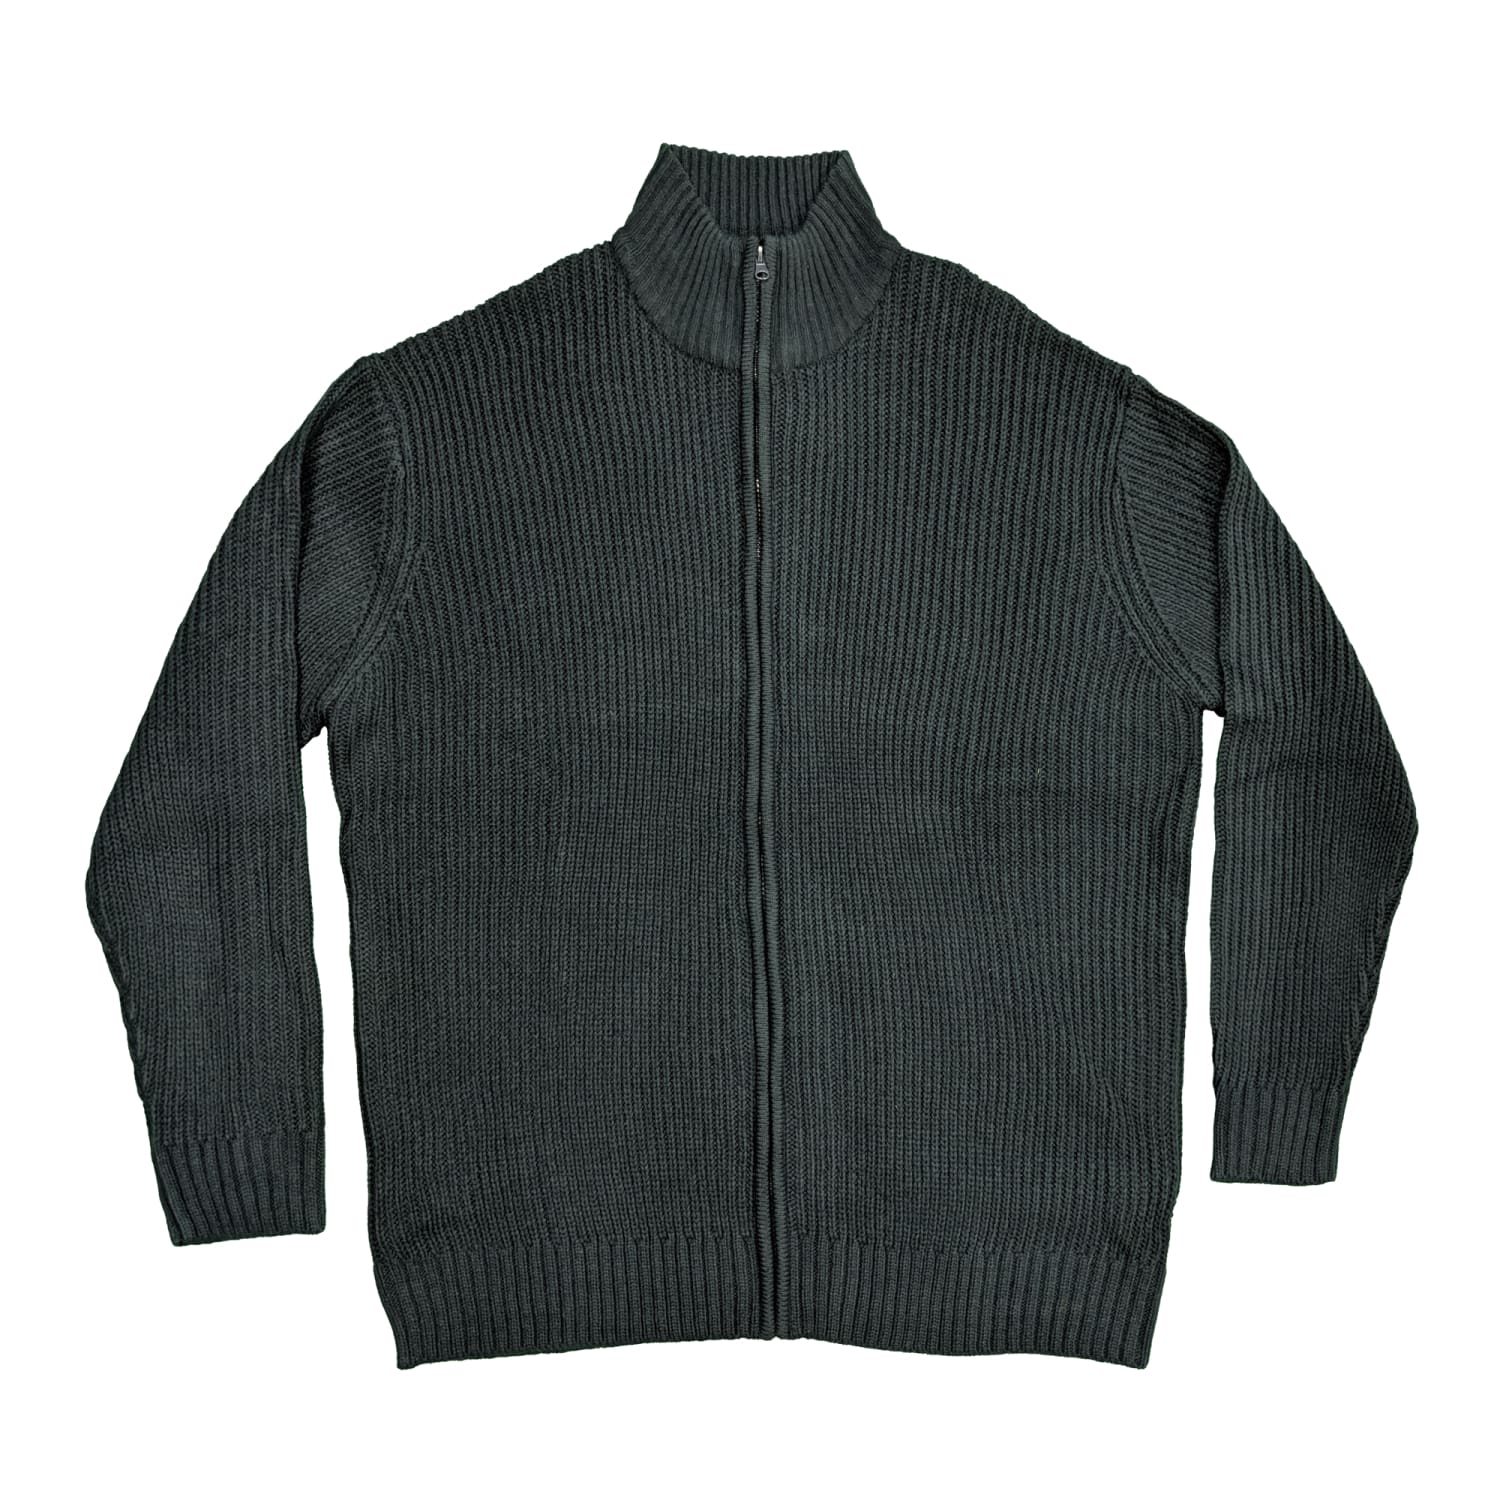 Metaphor Full Zip Sweater - 02426 - Navy 1